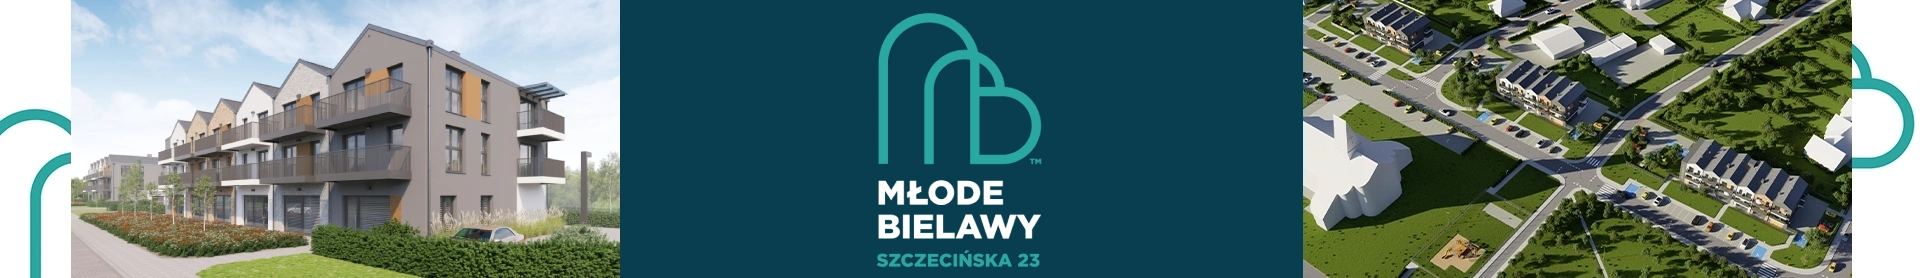 banner Młode Bielawy Szczecińska 25